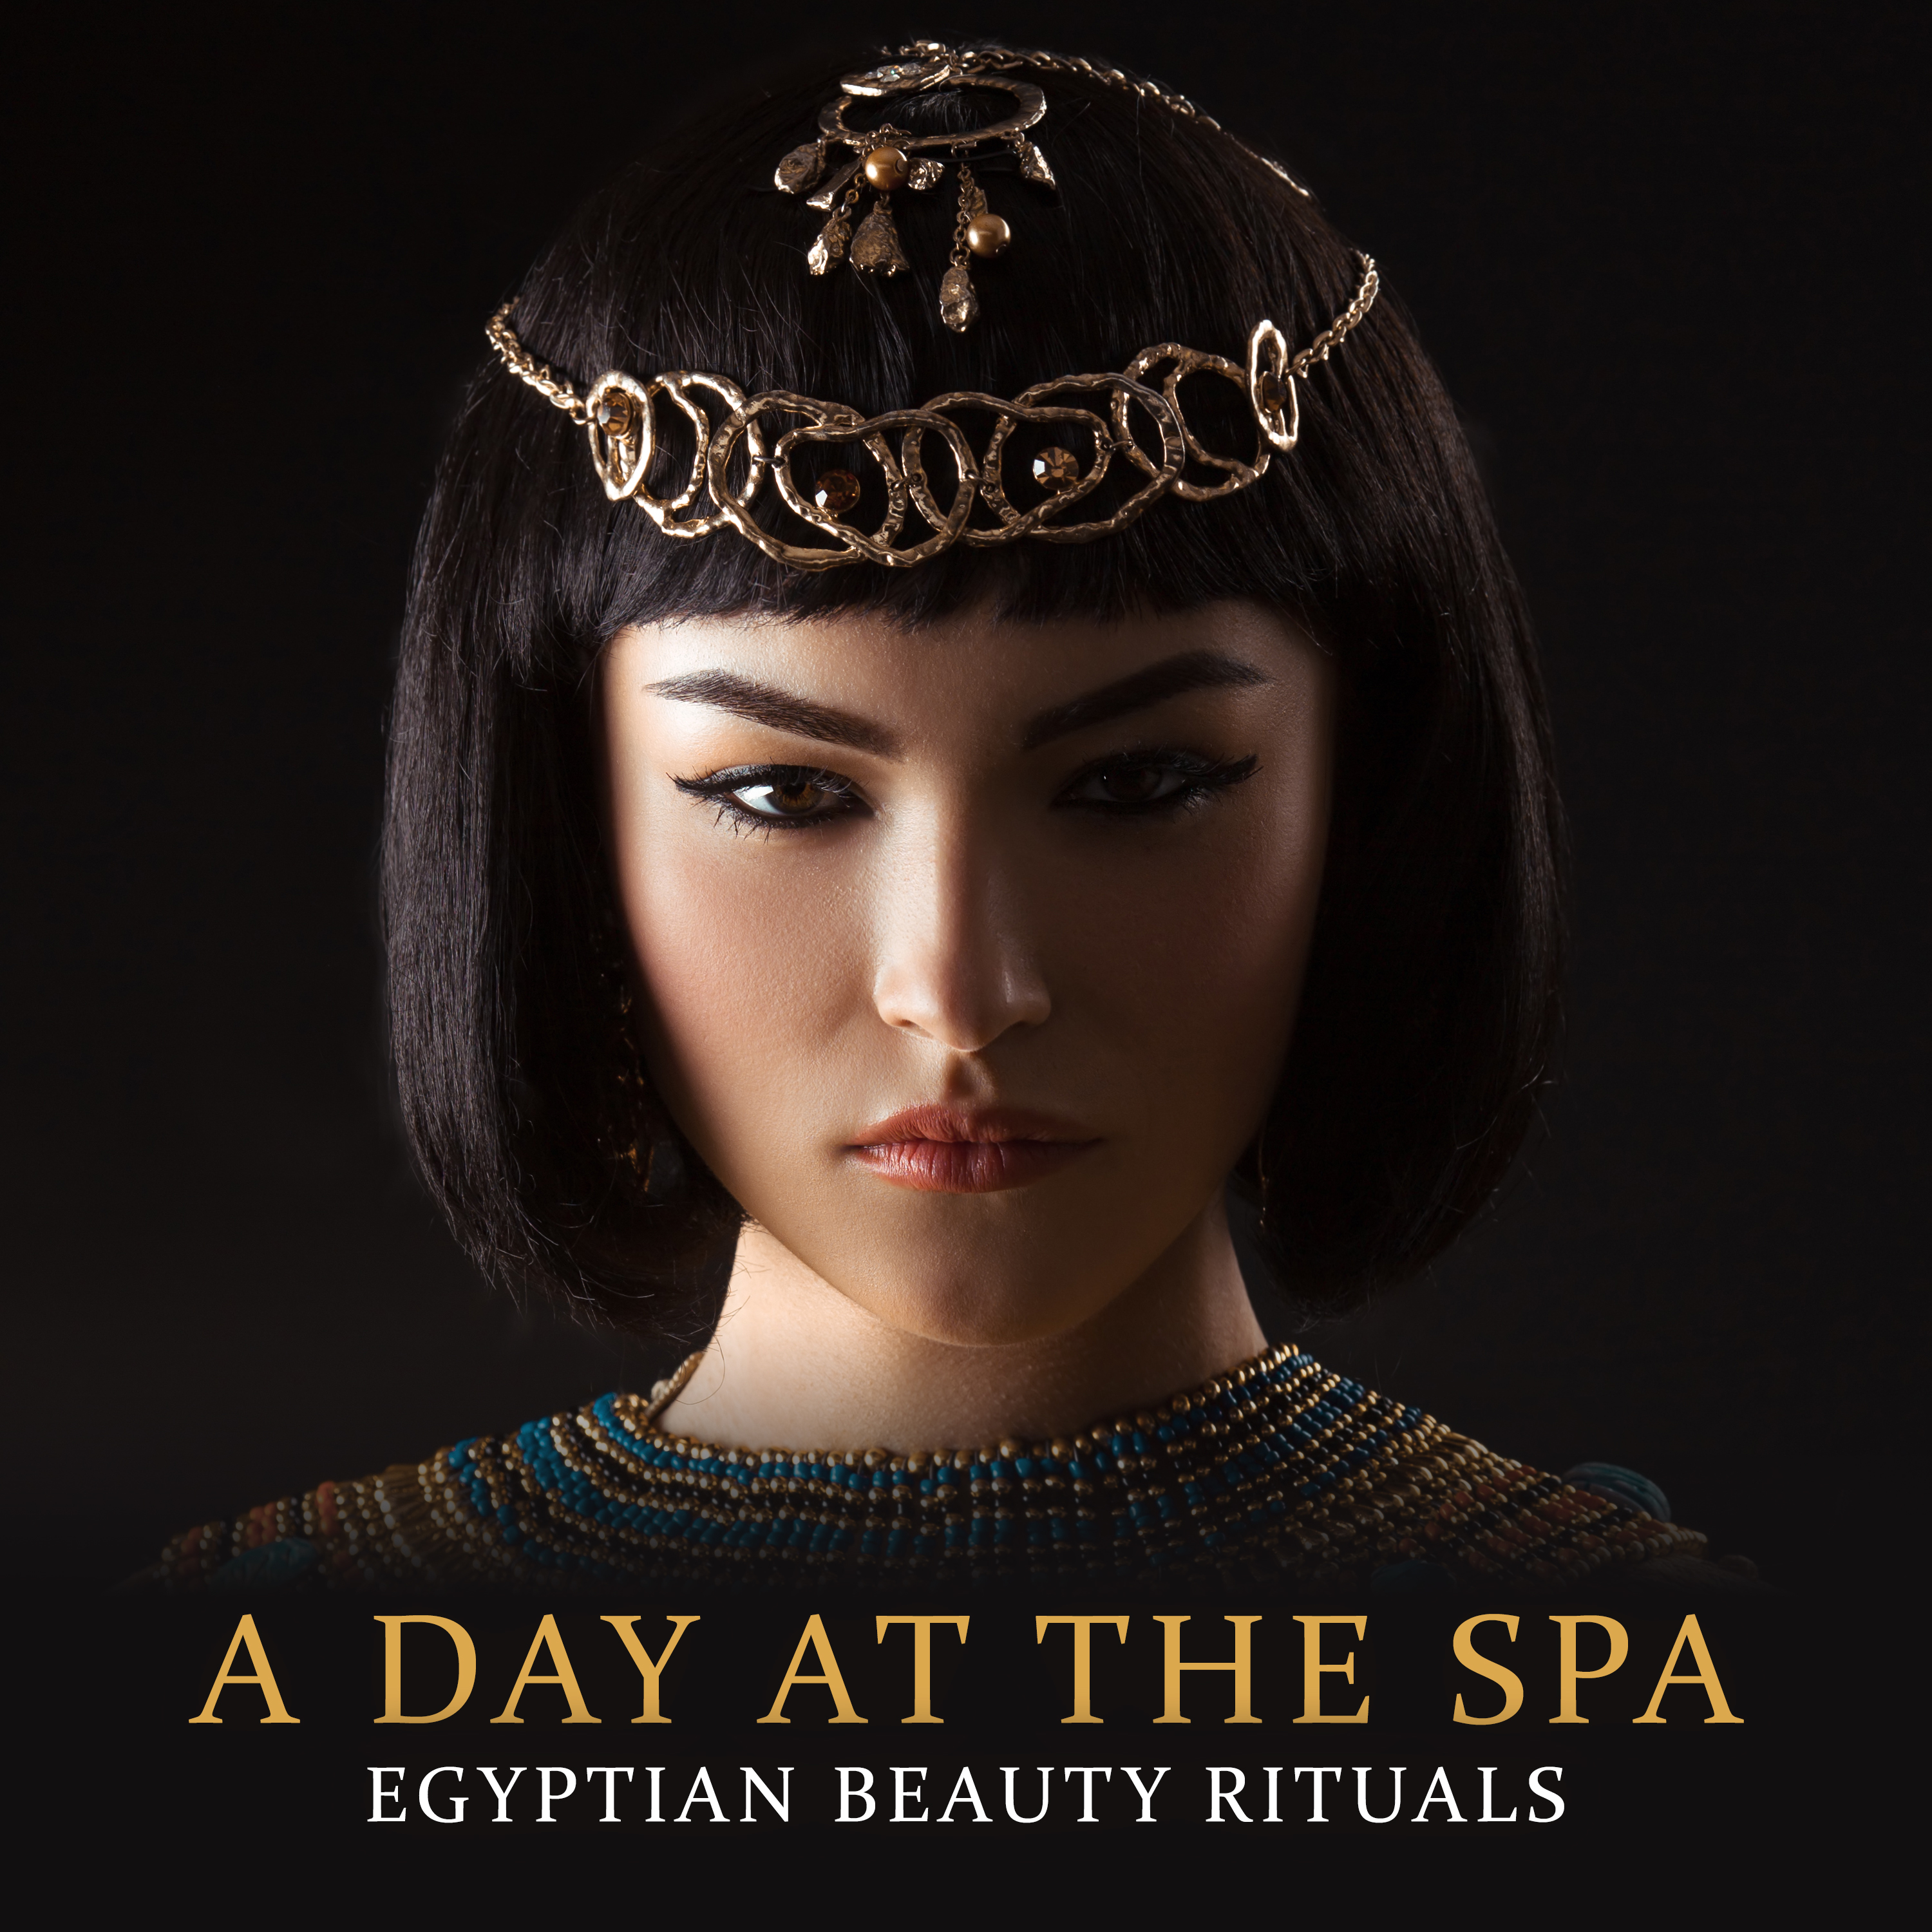 The Cleopatra Bath